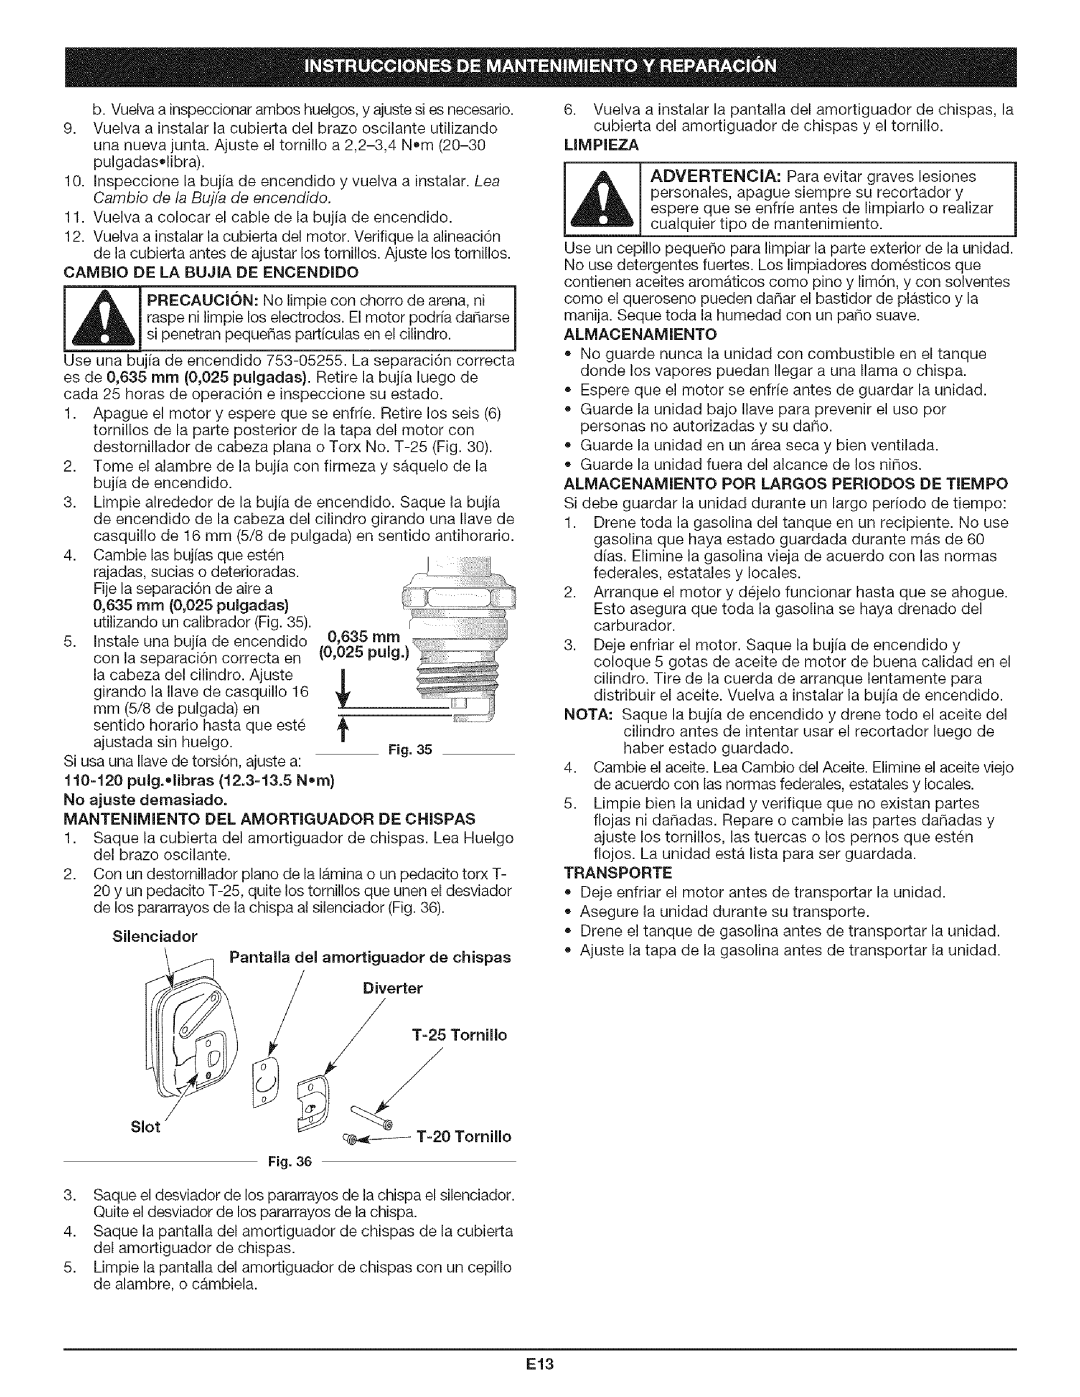 Craftsman 316.79197 manual Cambio De La Bujia De Encendido, Diverter, T=20 Tornillo, Limpieza 